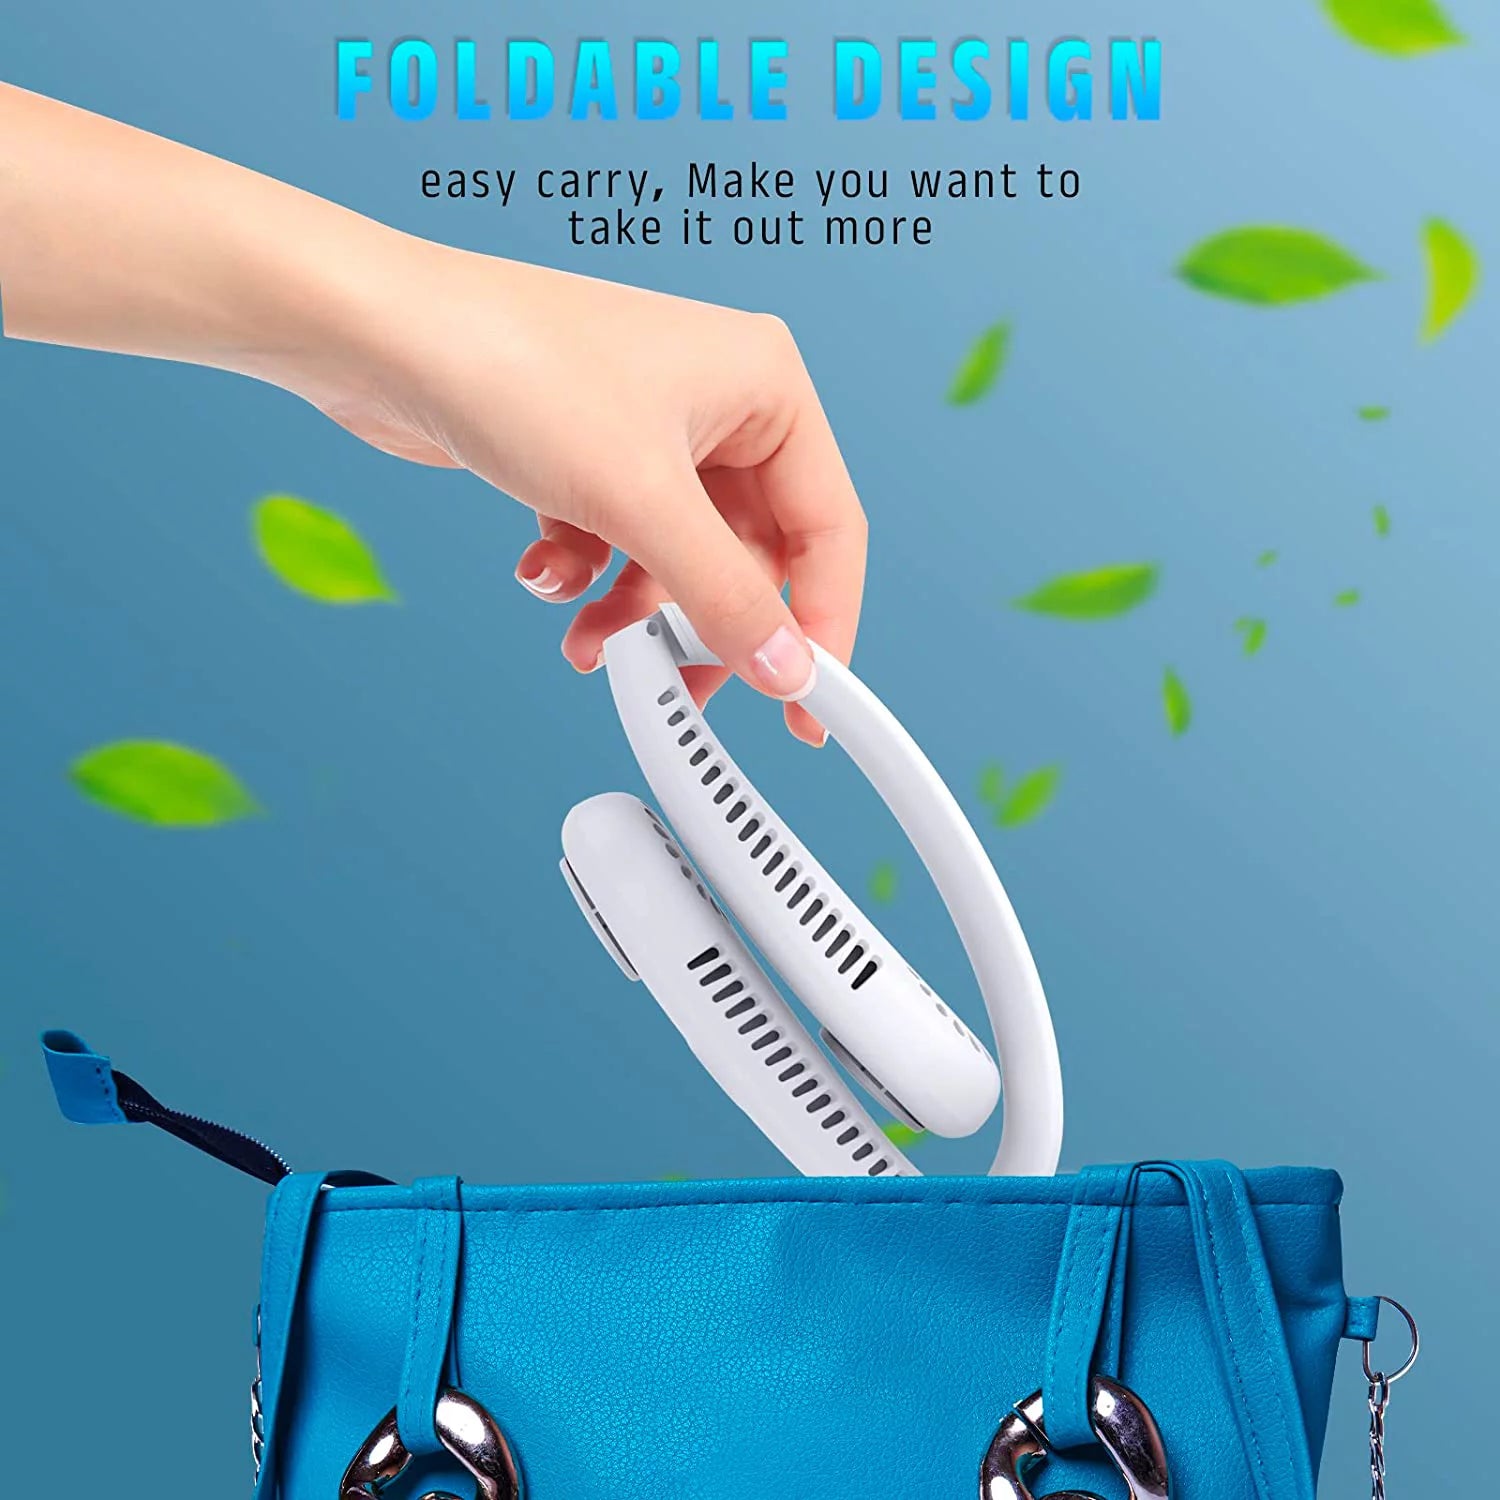 Portable Neck Fan, Hands Free Bladeless Fan,4000 Mah Battery 3 Speeds USB Powered Desk Fan Rechargeable Headphone Design Wearable Personal Fan